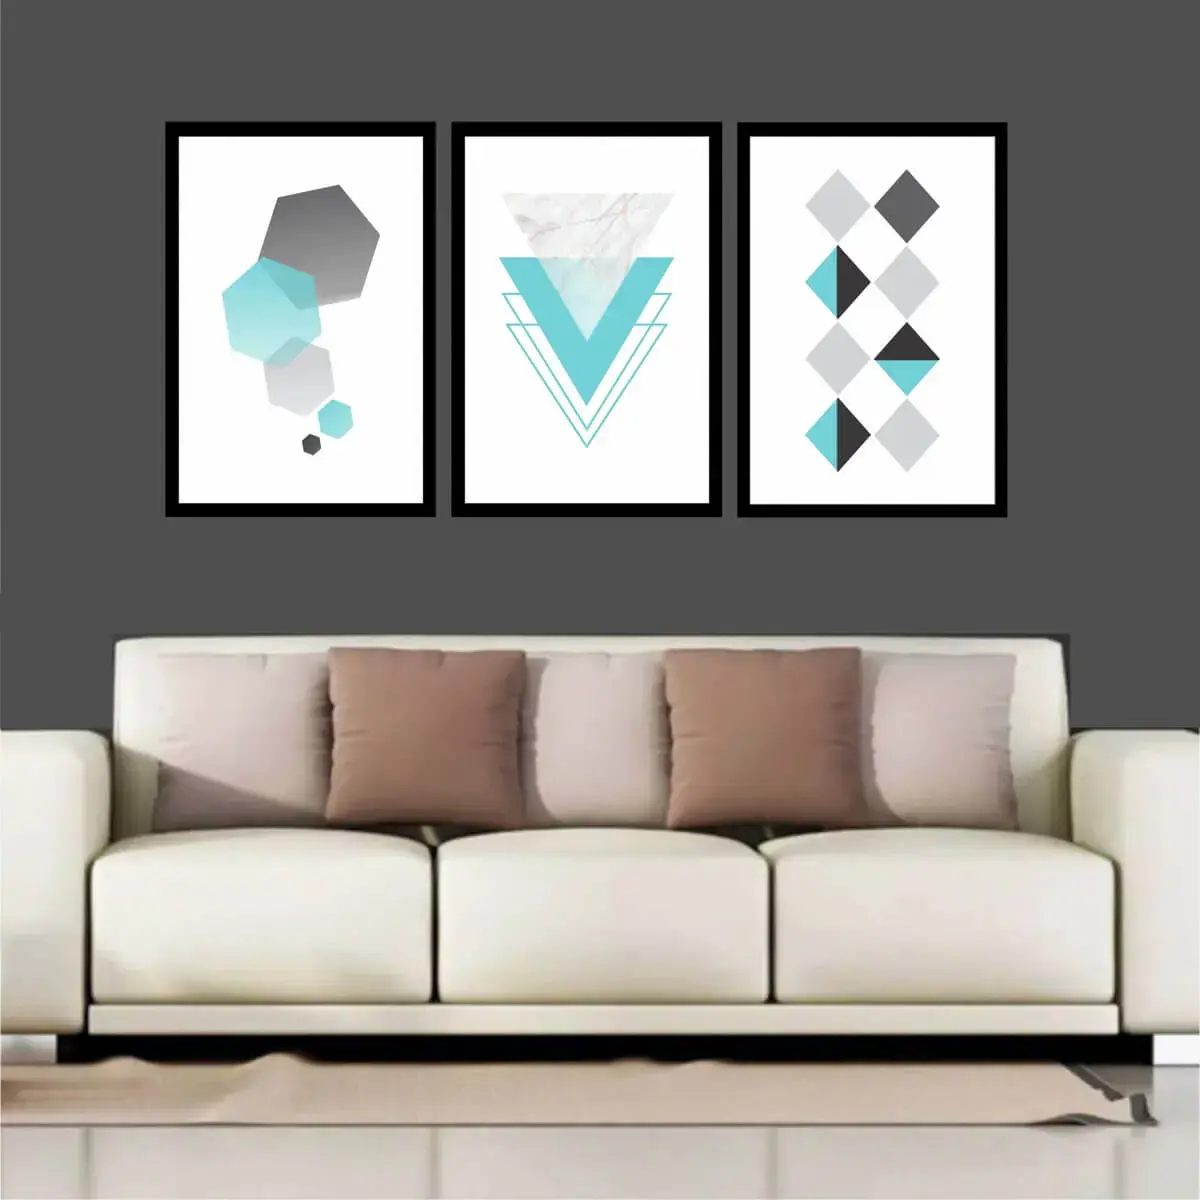 Sala de estar com quadros abstratos geométricos. Fonte: Elo7